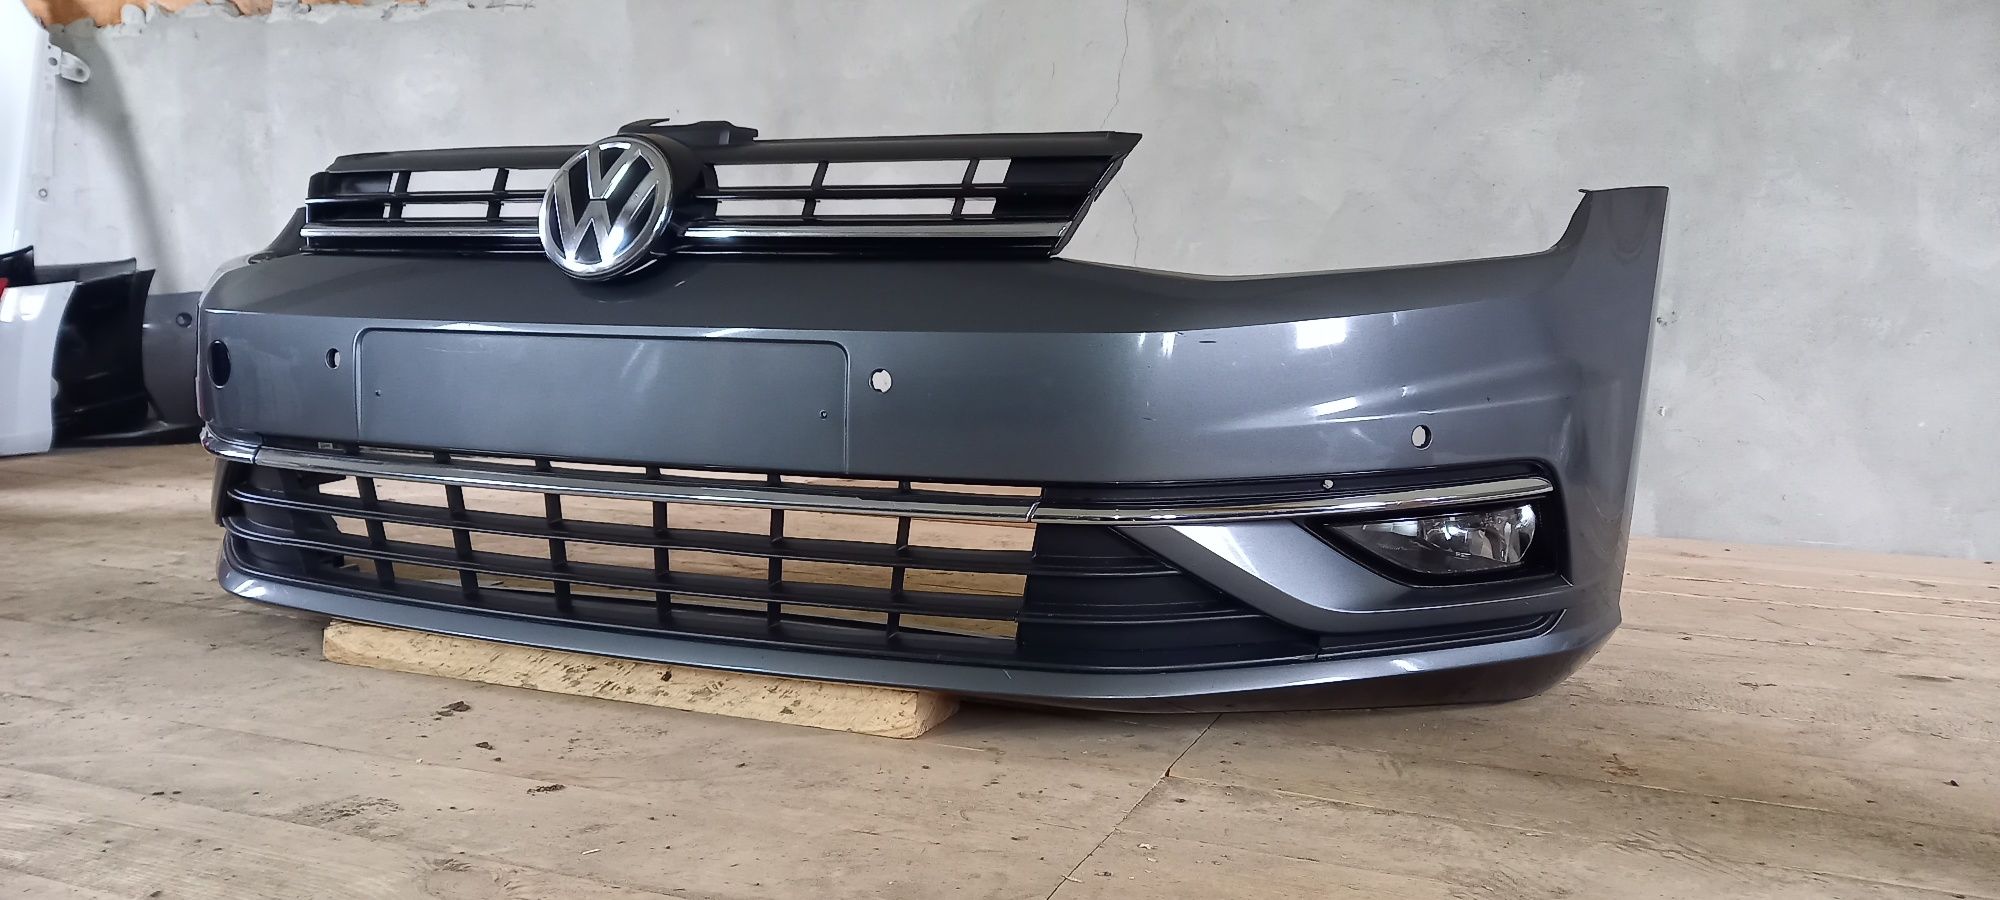 Бампер Volkswagen VW Golf 7 7.5 USA Europe 2017-2021 рік